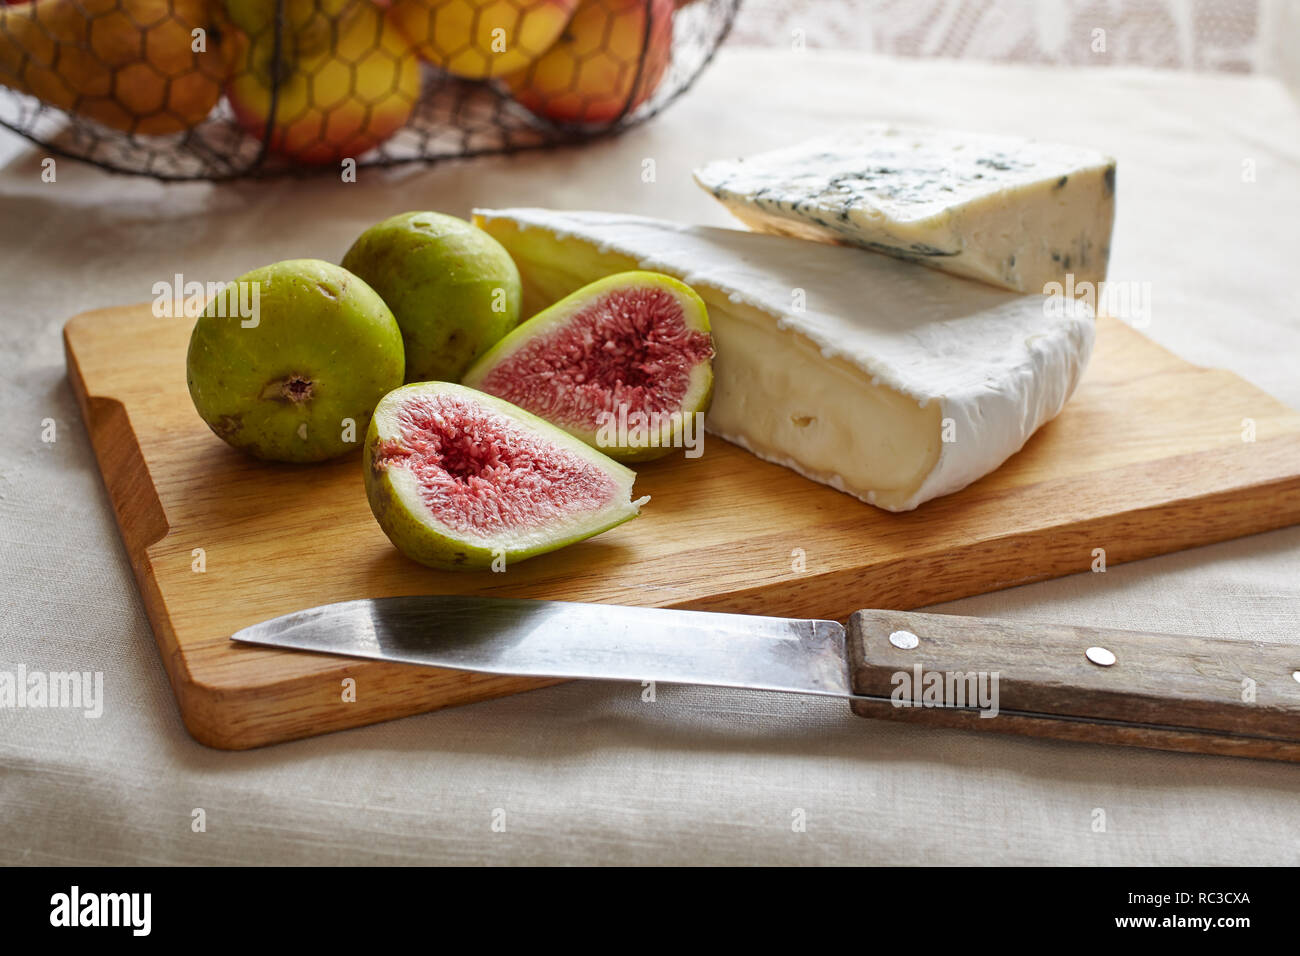 Le Camembert et le fromage bleu avec des figues sur une planche à découper Banque D'Images